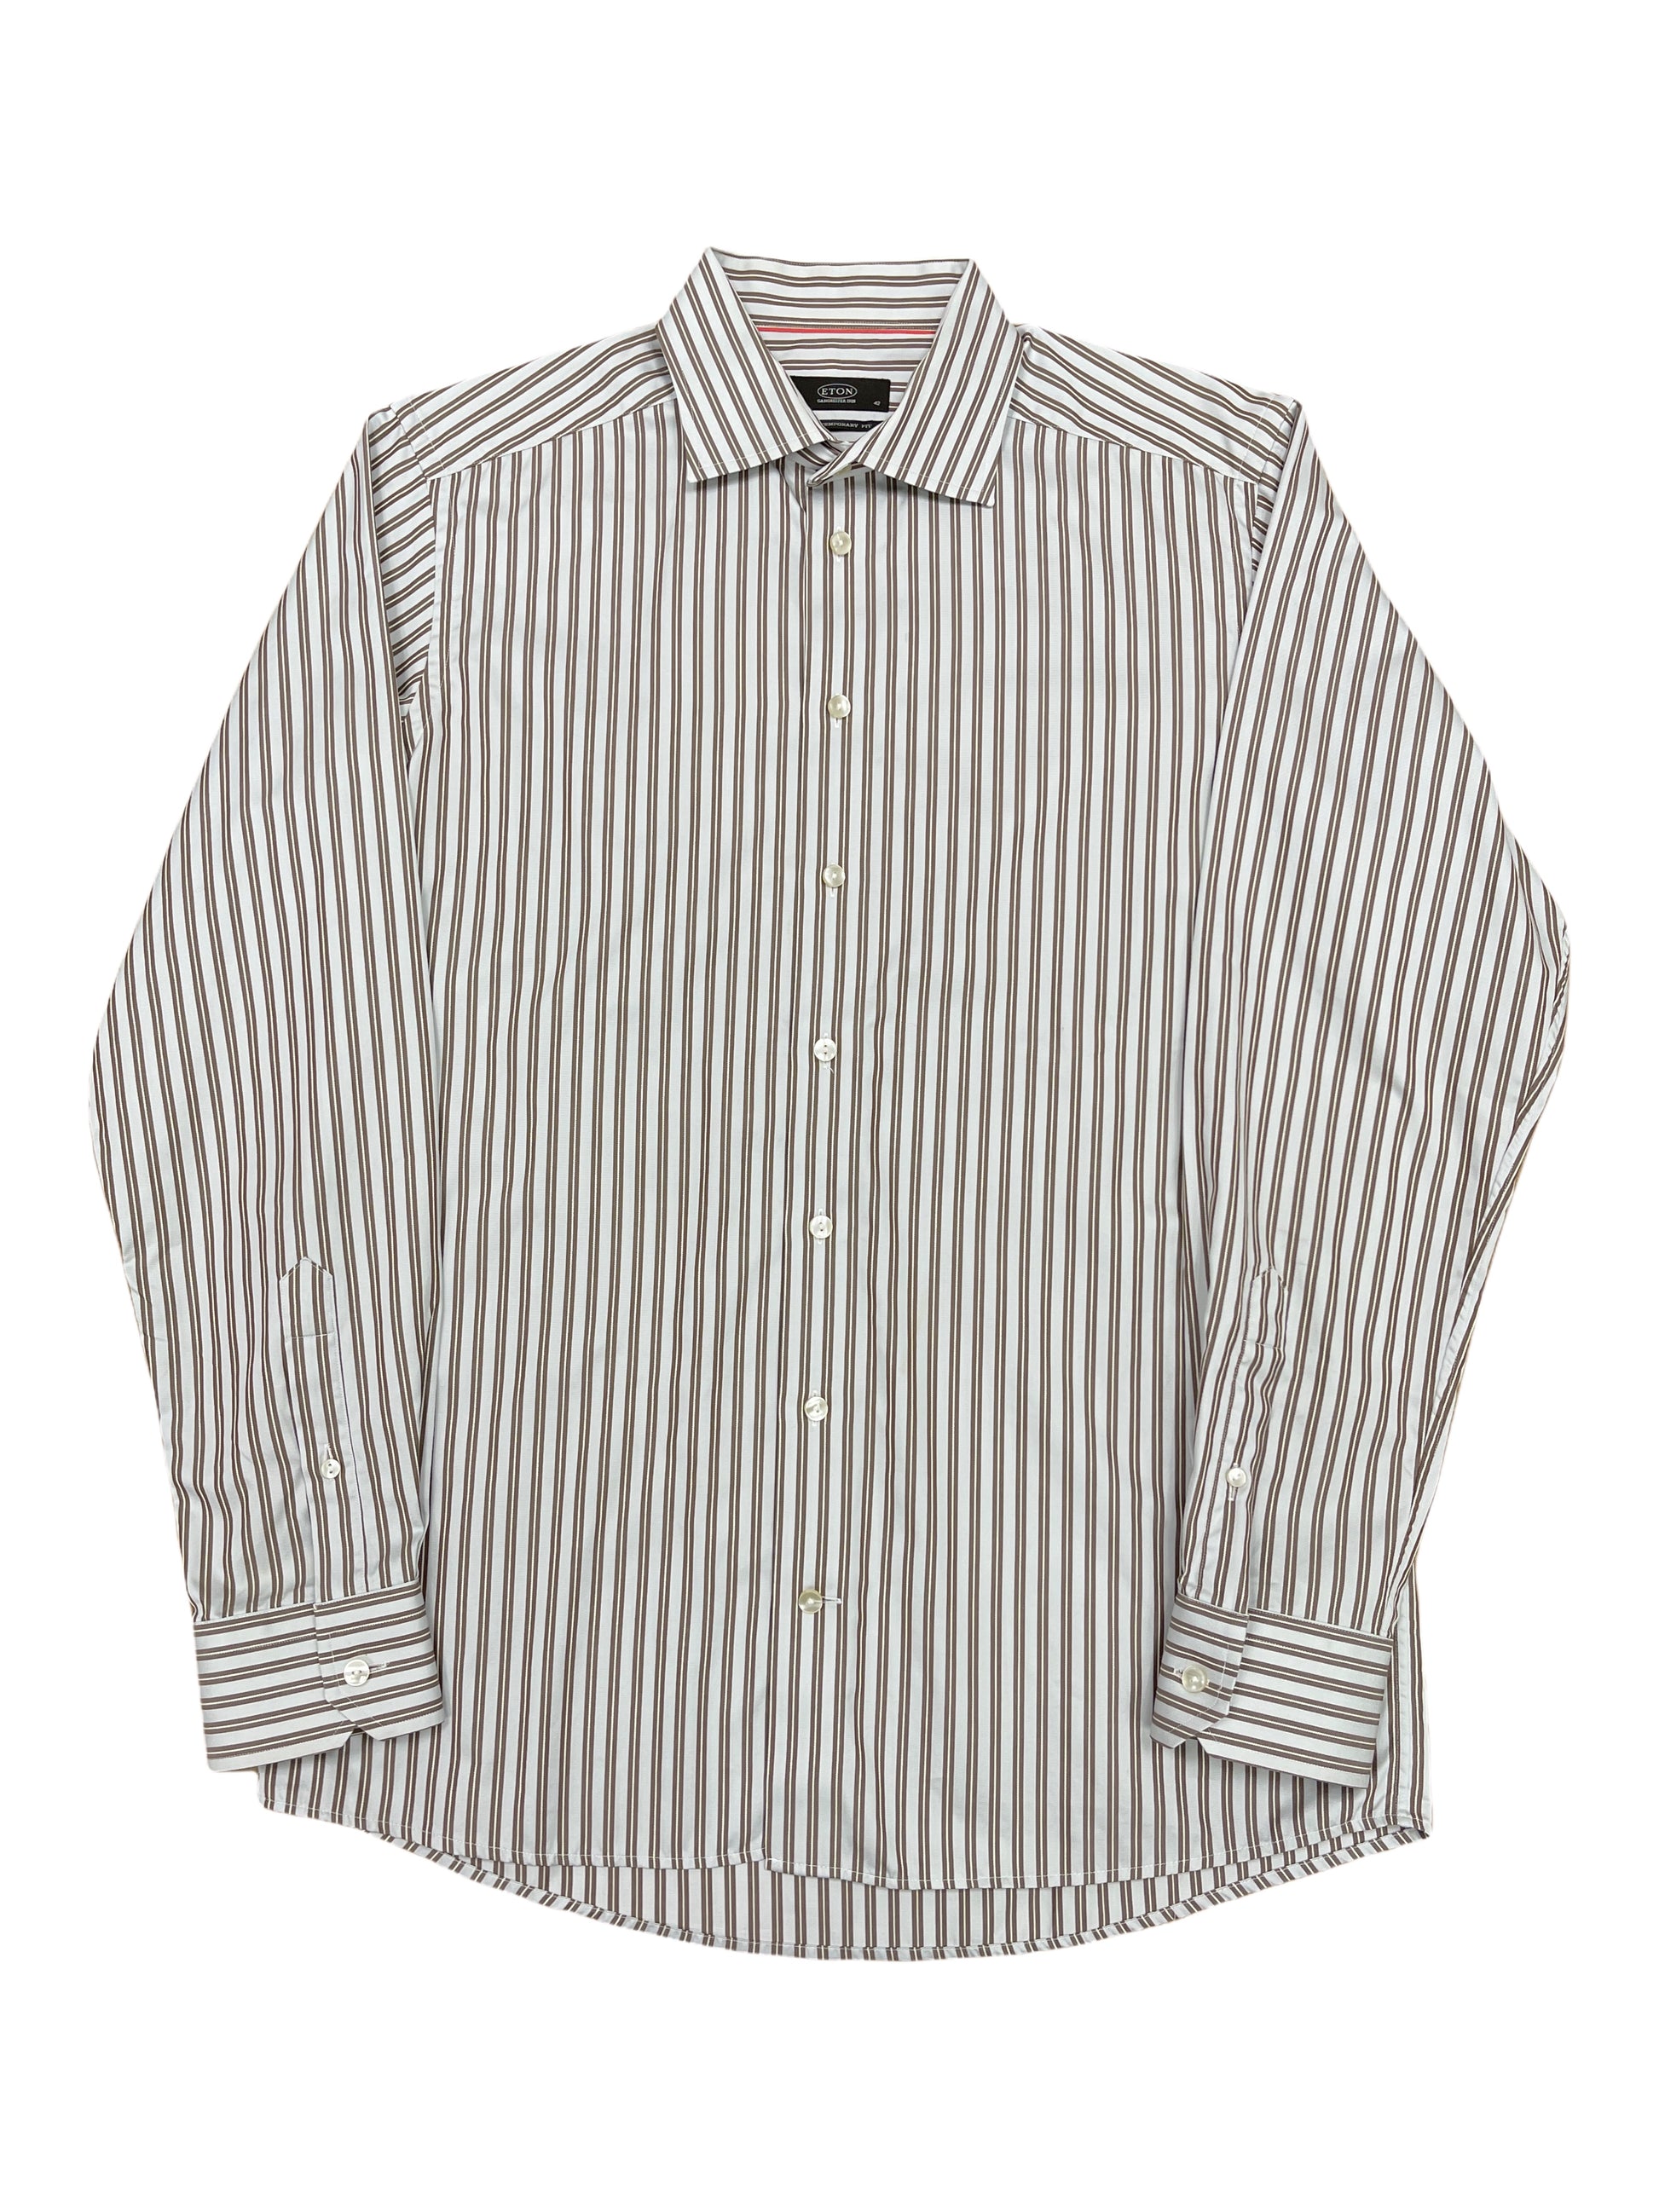 Eton Grey with Brown Stripe Dress Shirt 16.5 - Large